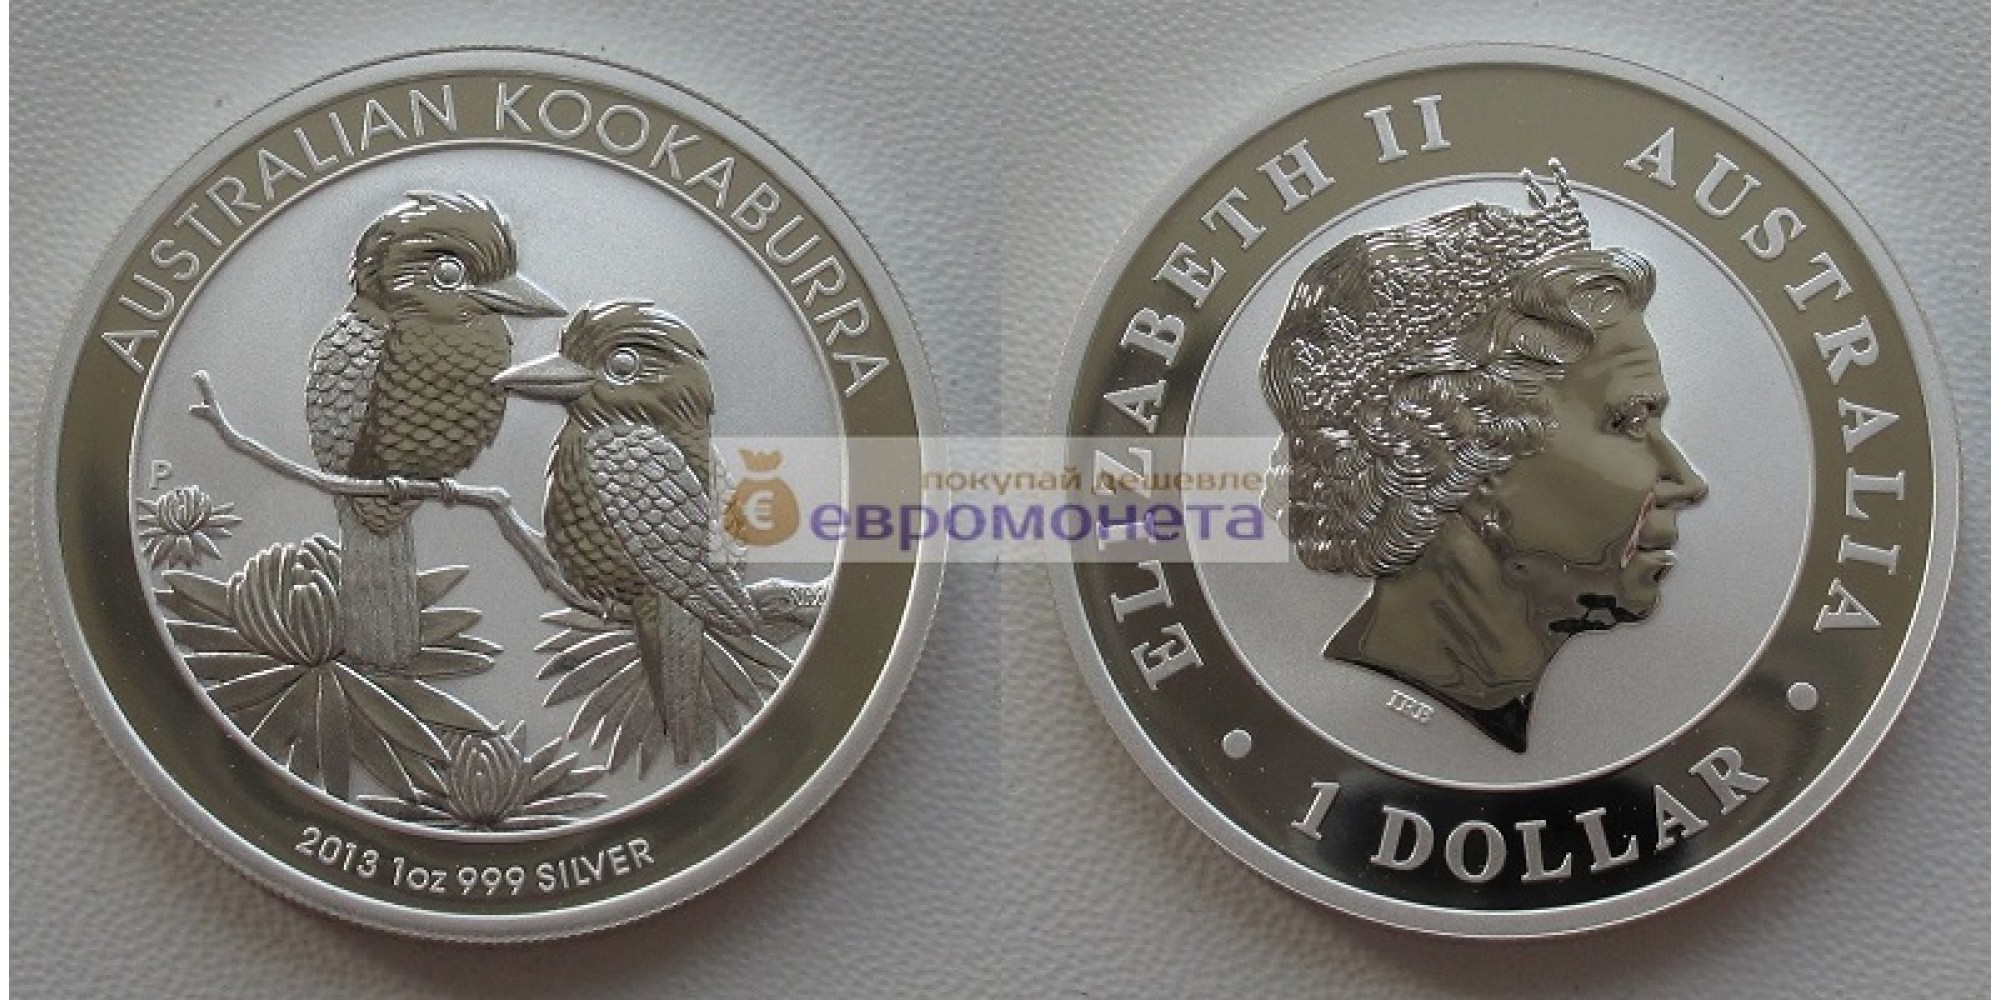 Австралия 1 доллар 2013 год Австралийская Кукабарра kookaburra. Серебро. пруф / proof